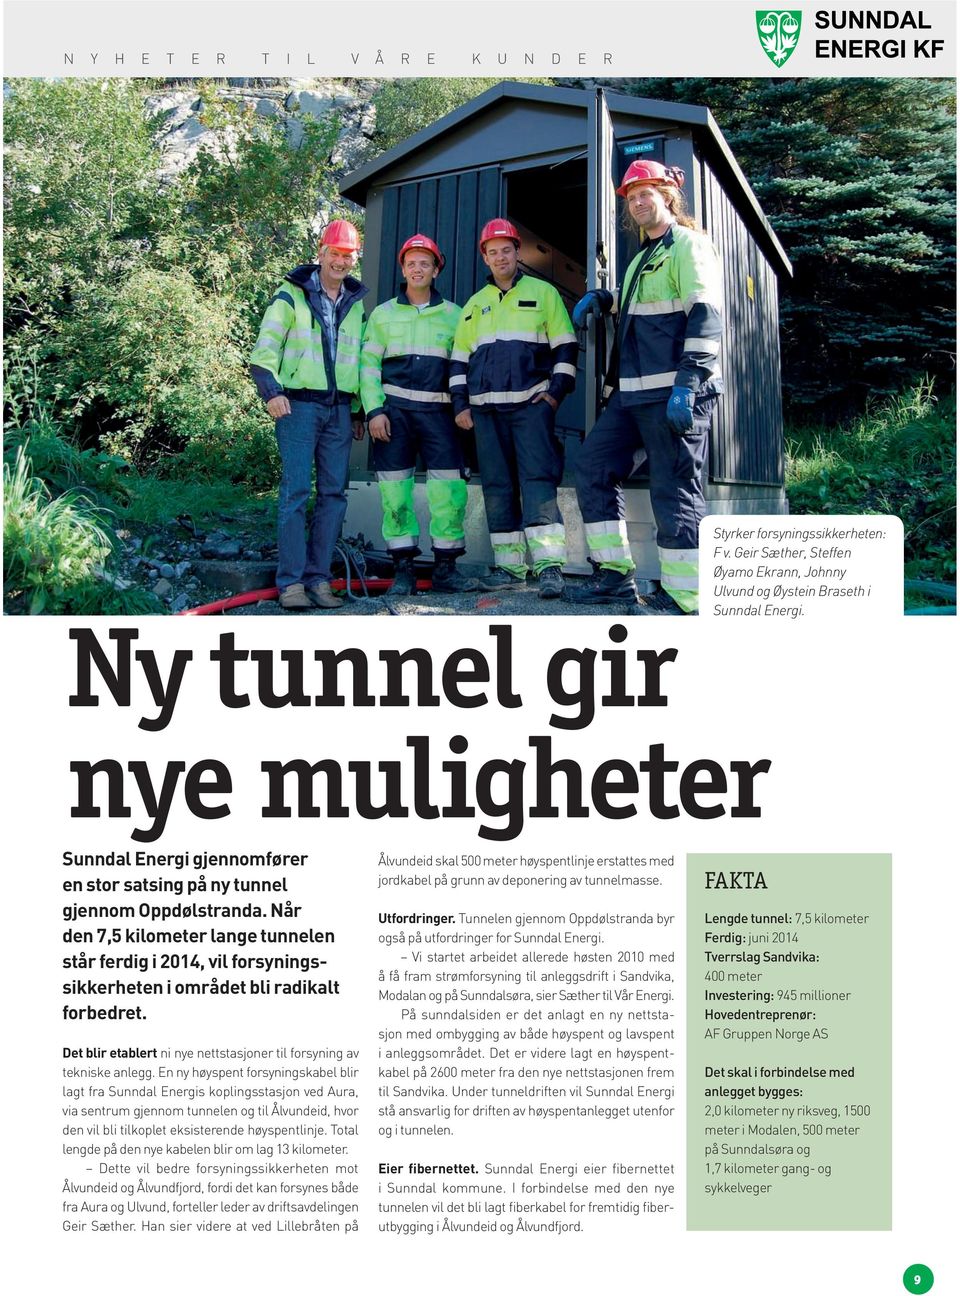 Når den 7,5 kilometer lange tunnelen står ferdig i 2014, vil forsyningssikkerheten i området bli radikalt forbedret. Det blir etablert ni nye nettstasjoner til forsyning av tekniske anlegg.